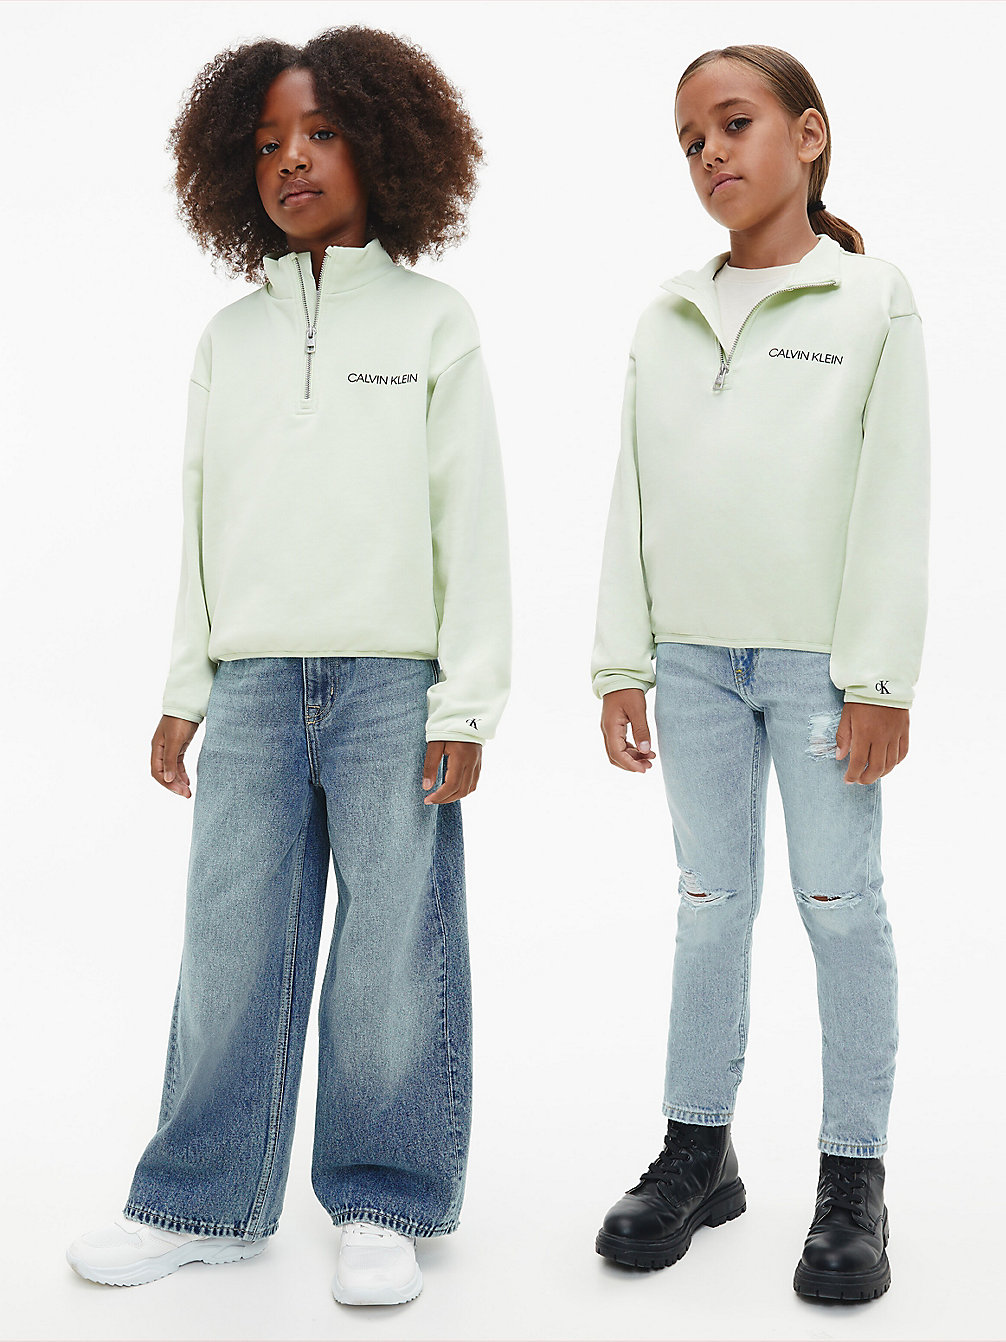 SEAFOAM GREEN Unisex Relaxed Zip Neck Sweatshirt undefined kids unisex Calvin Klein